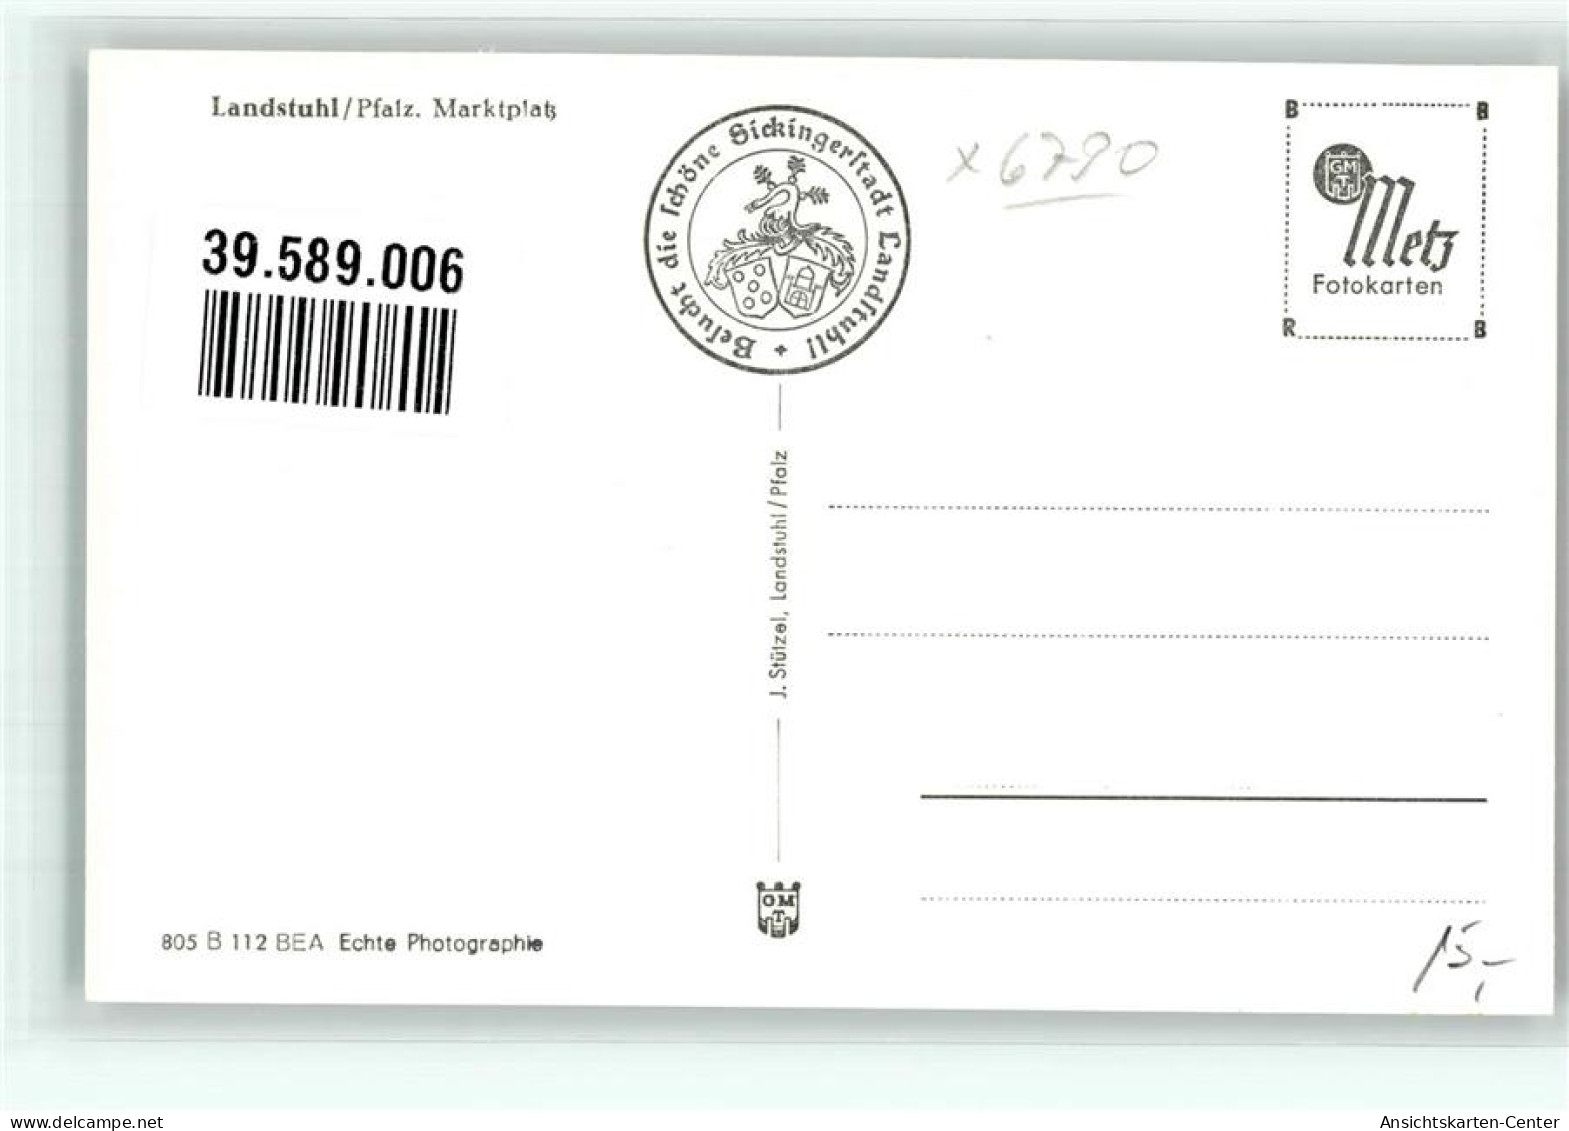 39589006 - Landstuhl - Landstuhl